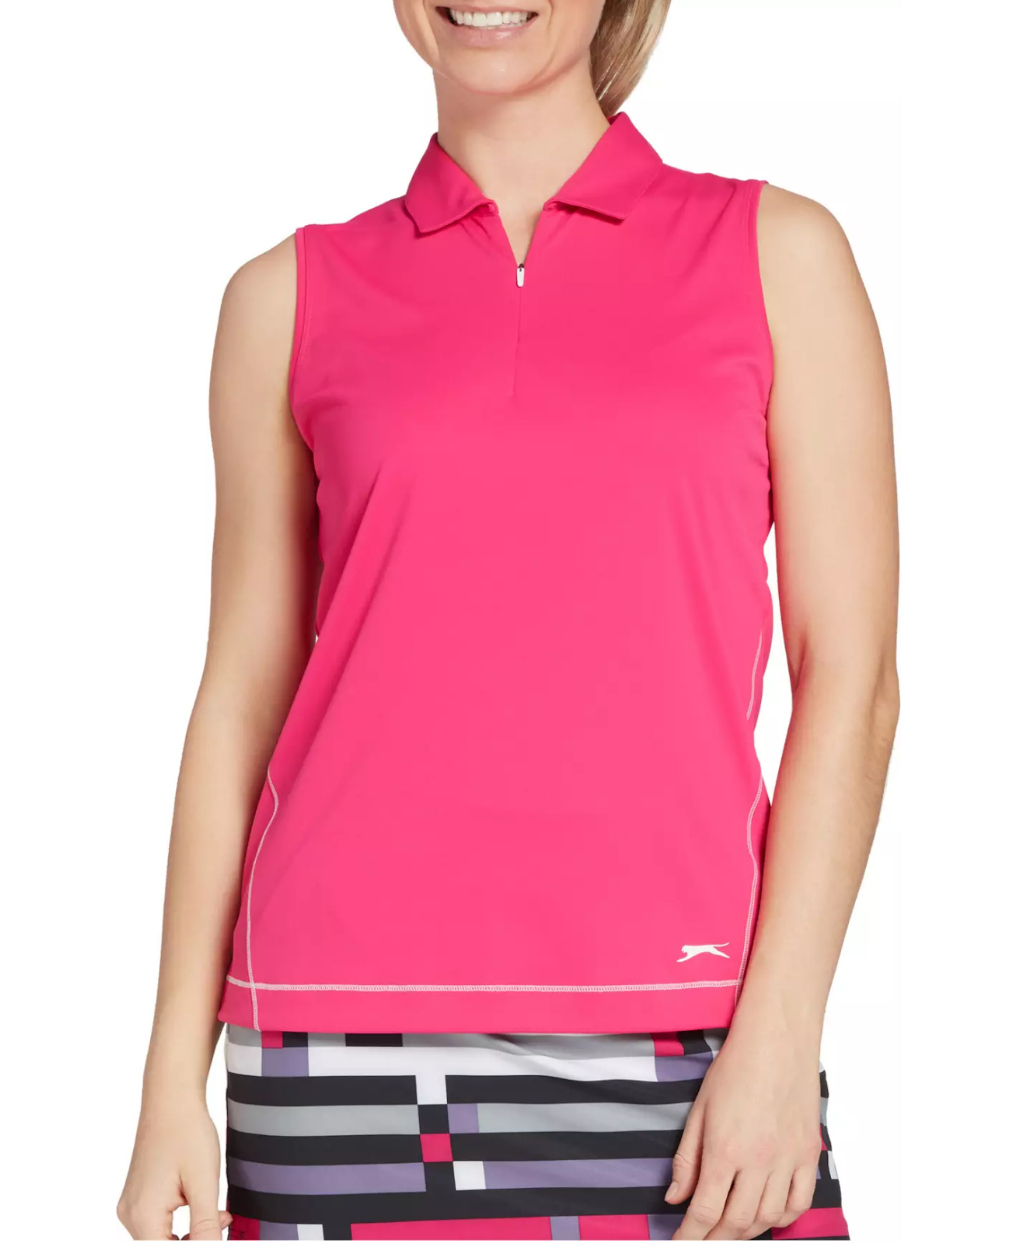 ladies pink golf shirt